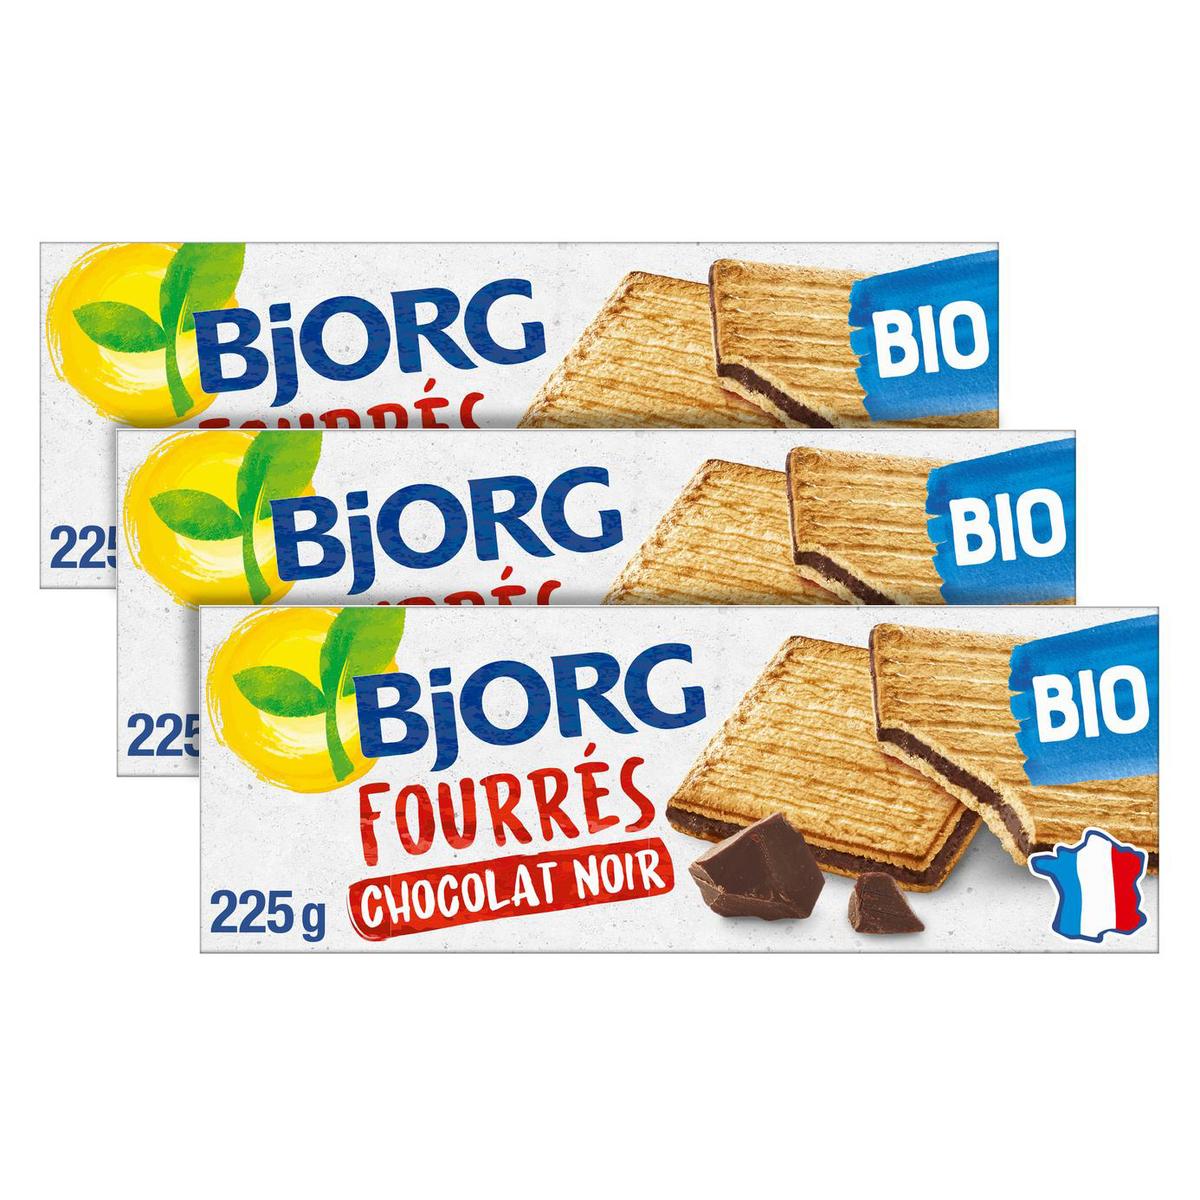 Acheter Promotion Bjorg Fourrés au chocolat noir bio, Lot de 3x225g